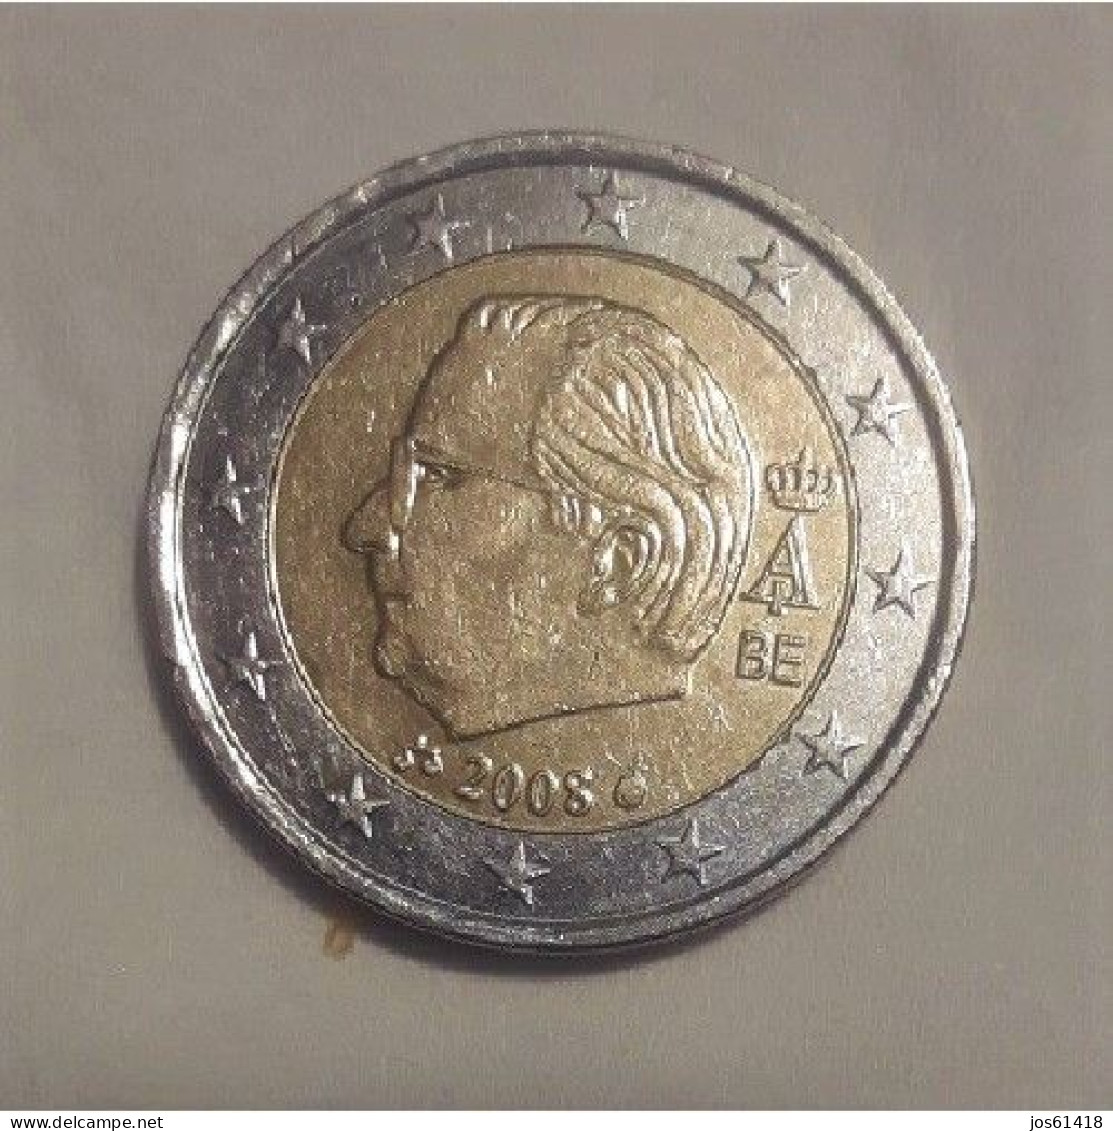 2 Euros Bèlgica / Belgium  2008  BC - Belgium